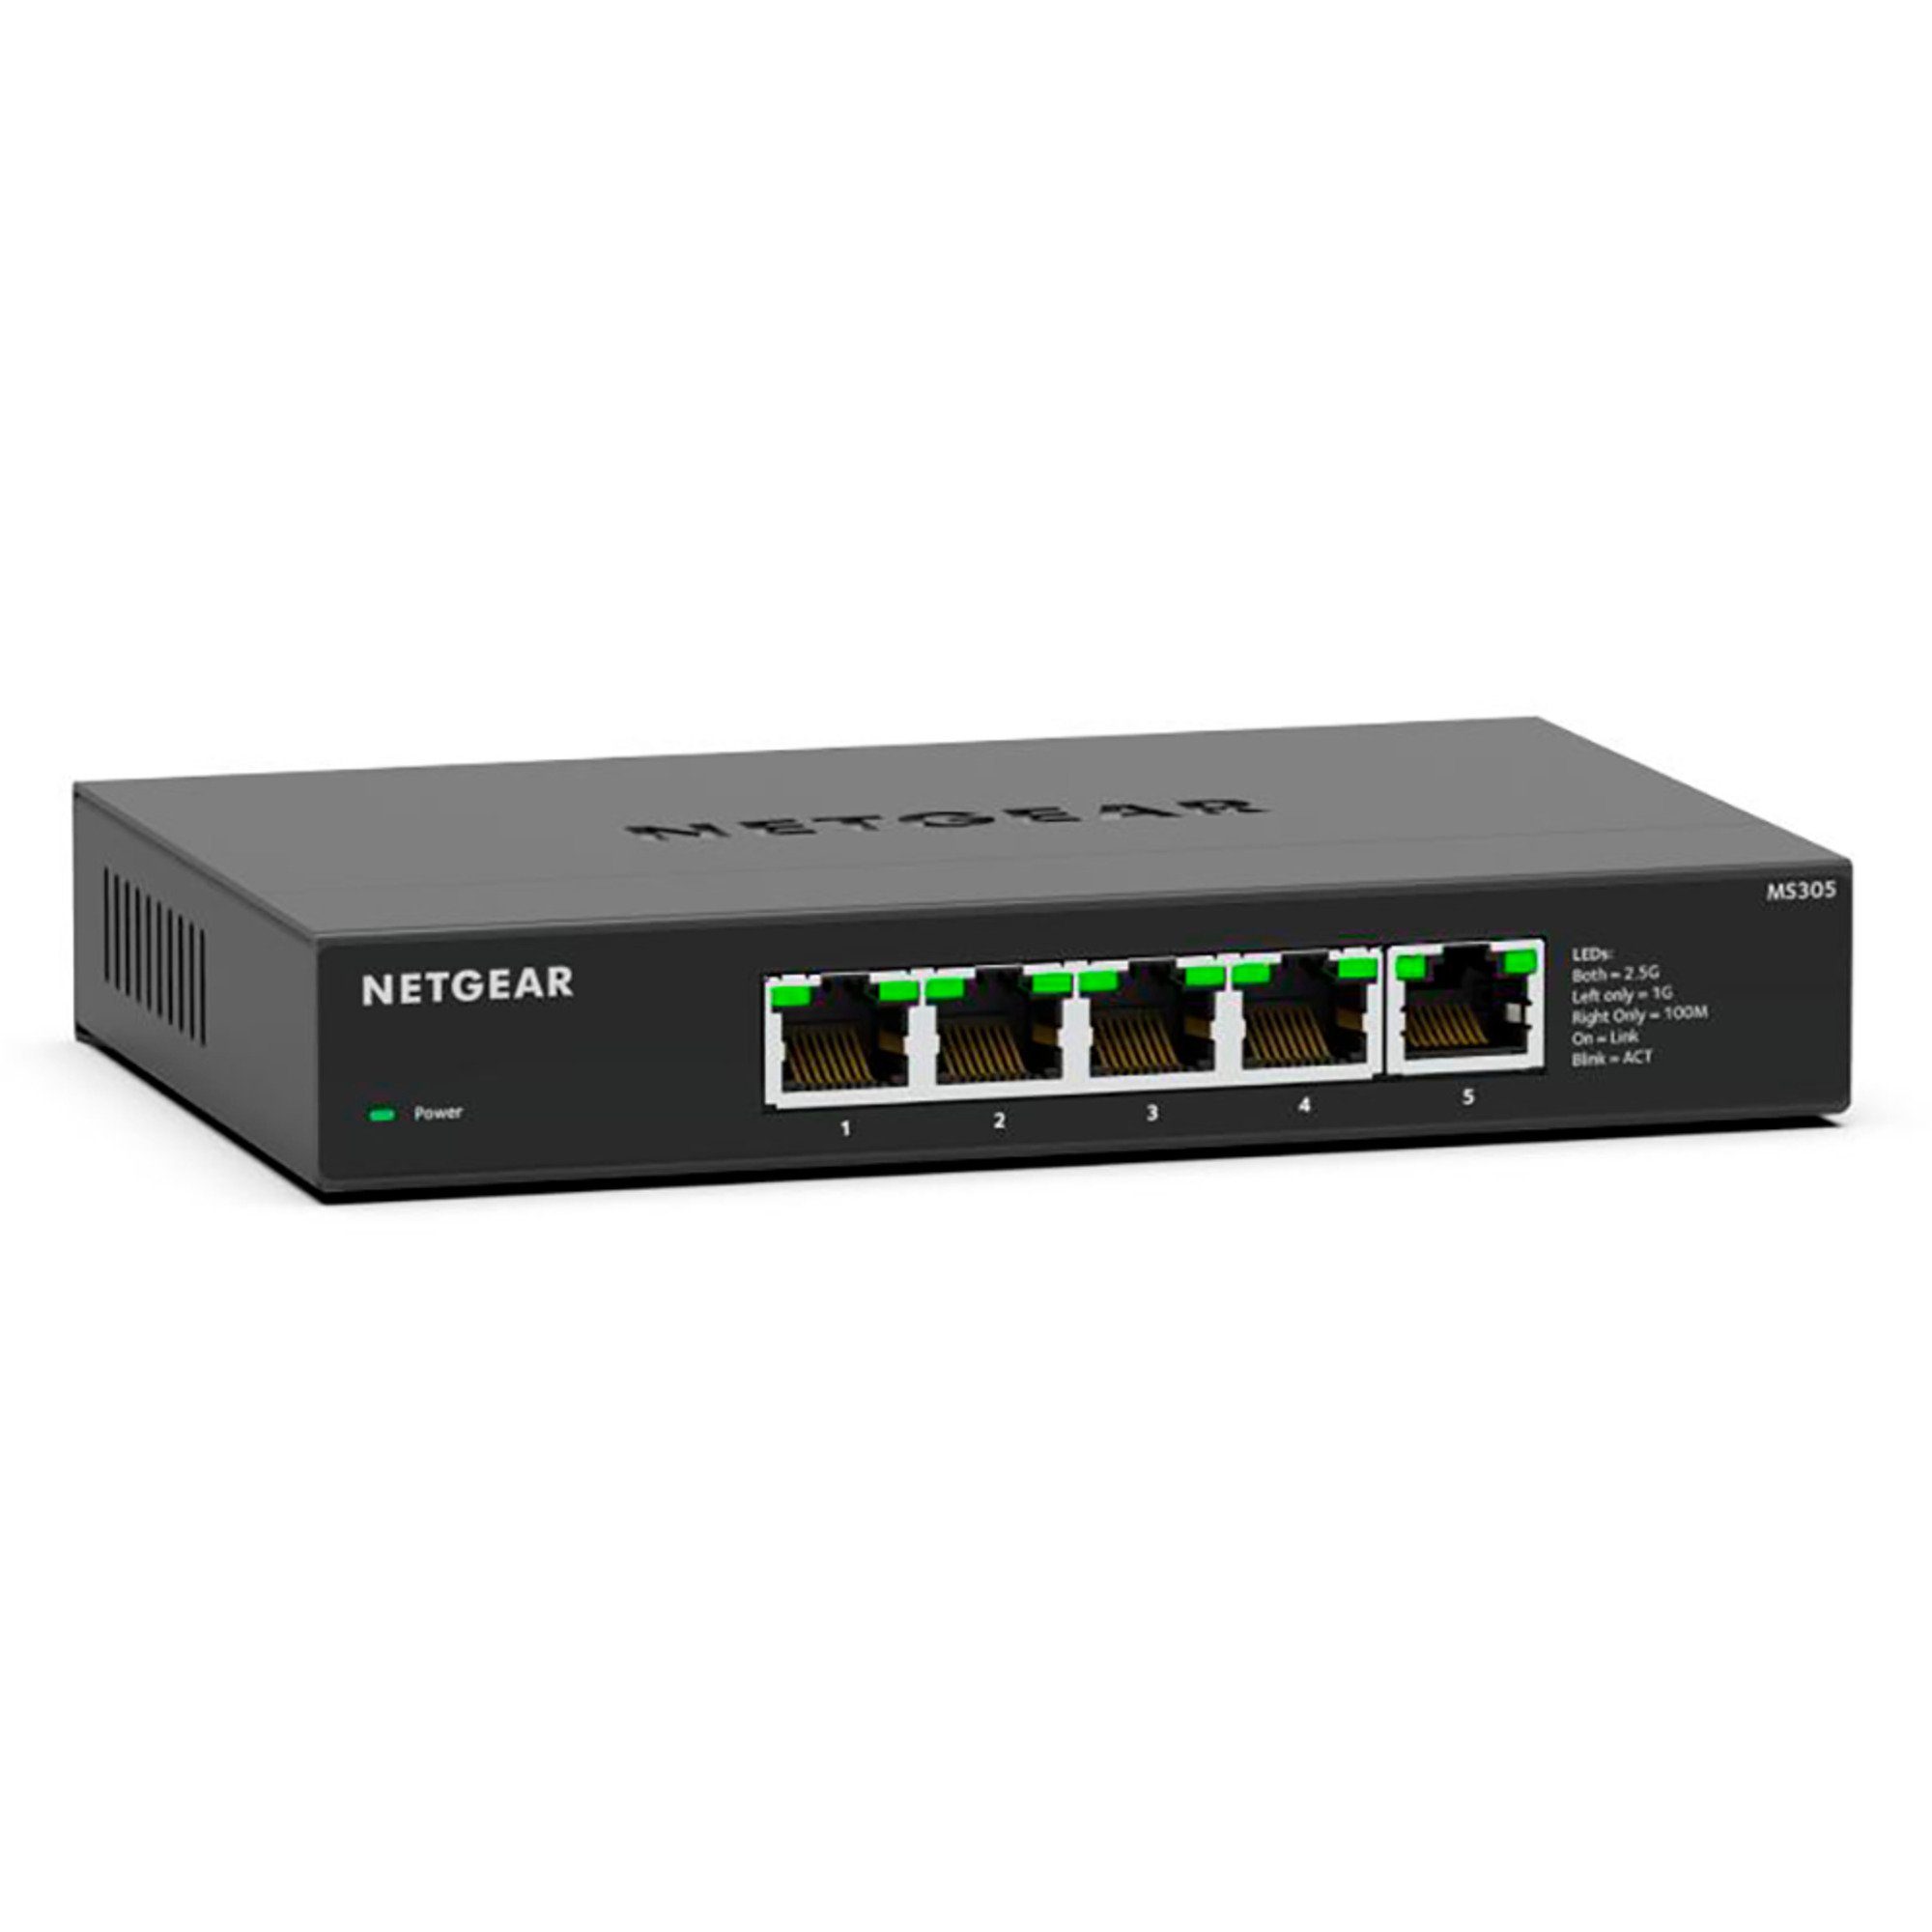 NETGEAR Netgear MS305, Switch, (lüfterlos) Netzwerk-Switch